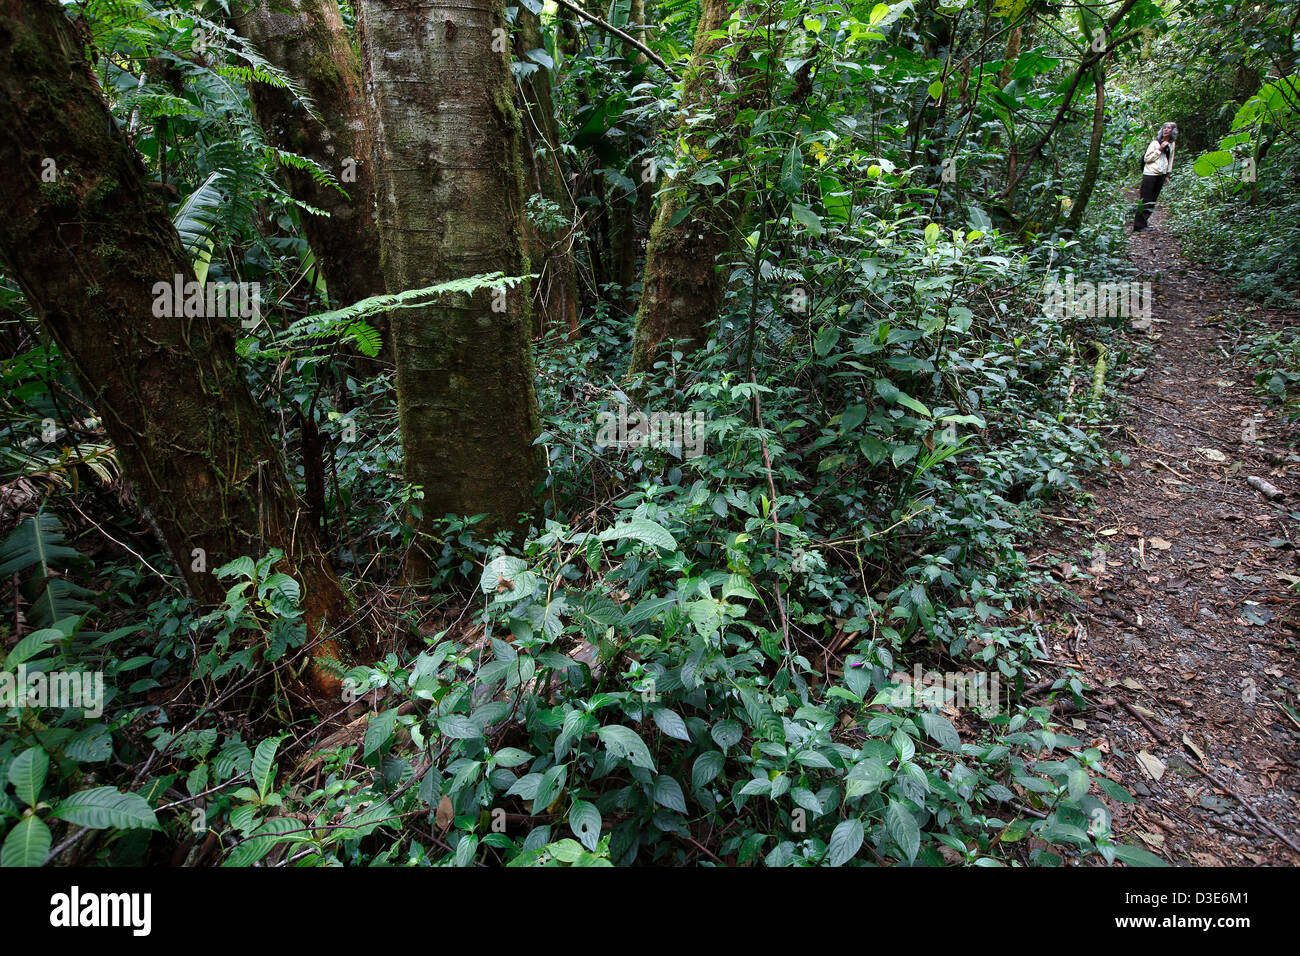 Sentier de la forêt tropicale, parc national La Amistad, Panama Banque D'Images